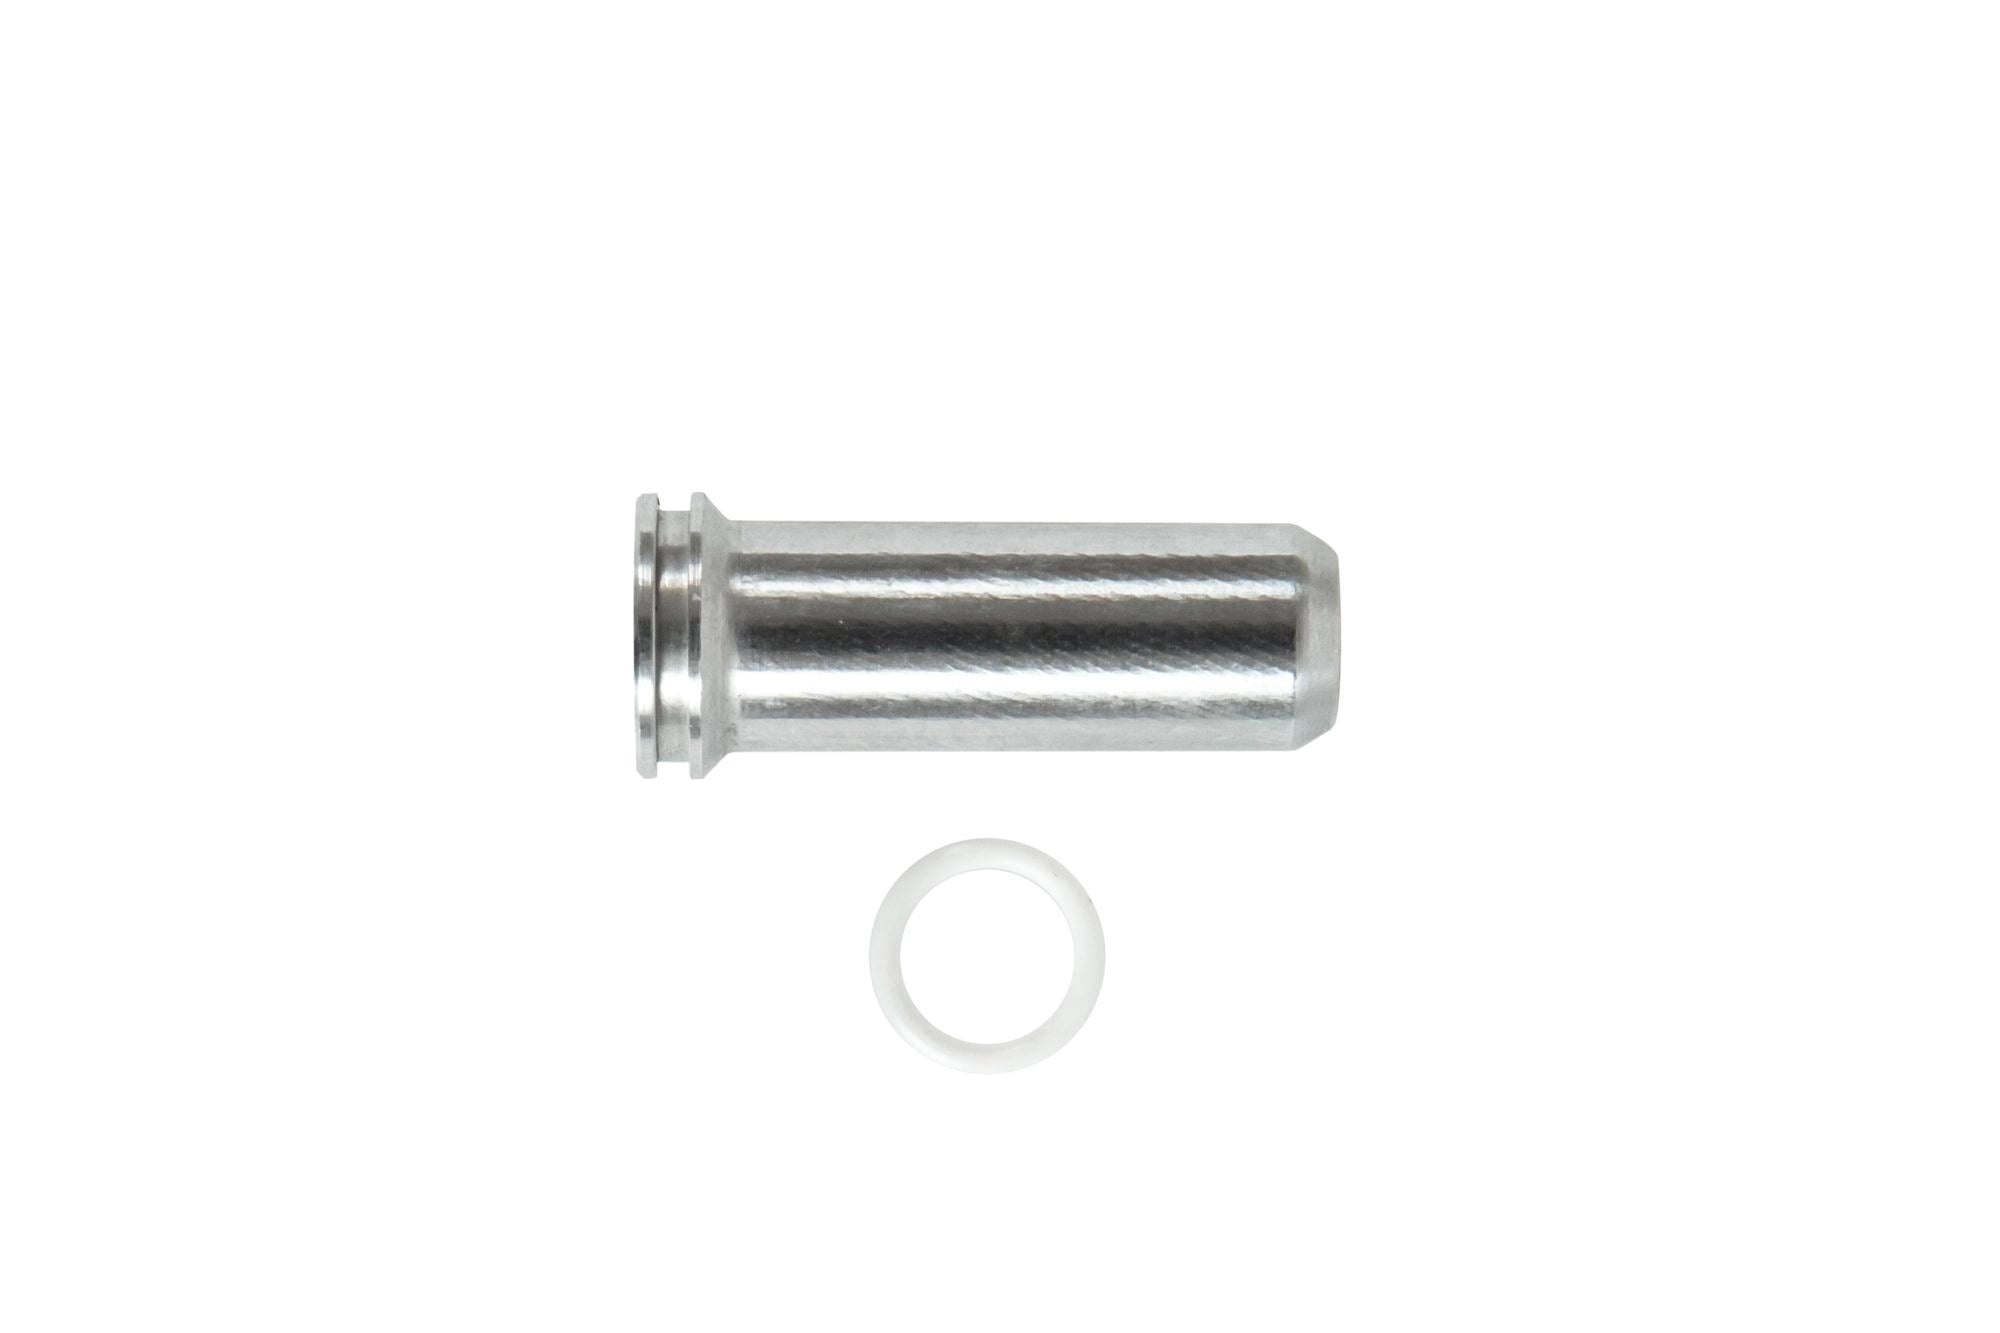 Aluminum CNC Nozzle - 21.3 mm